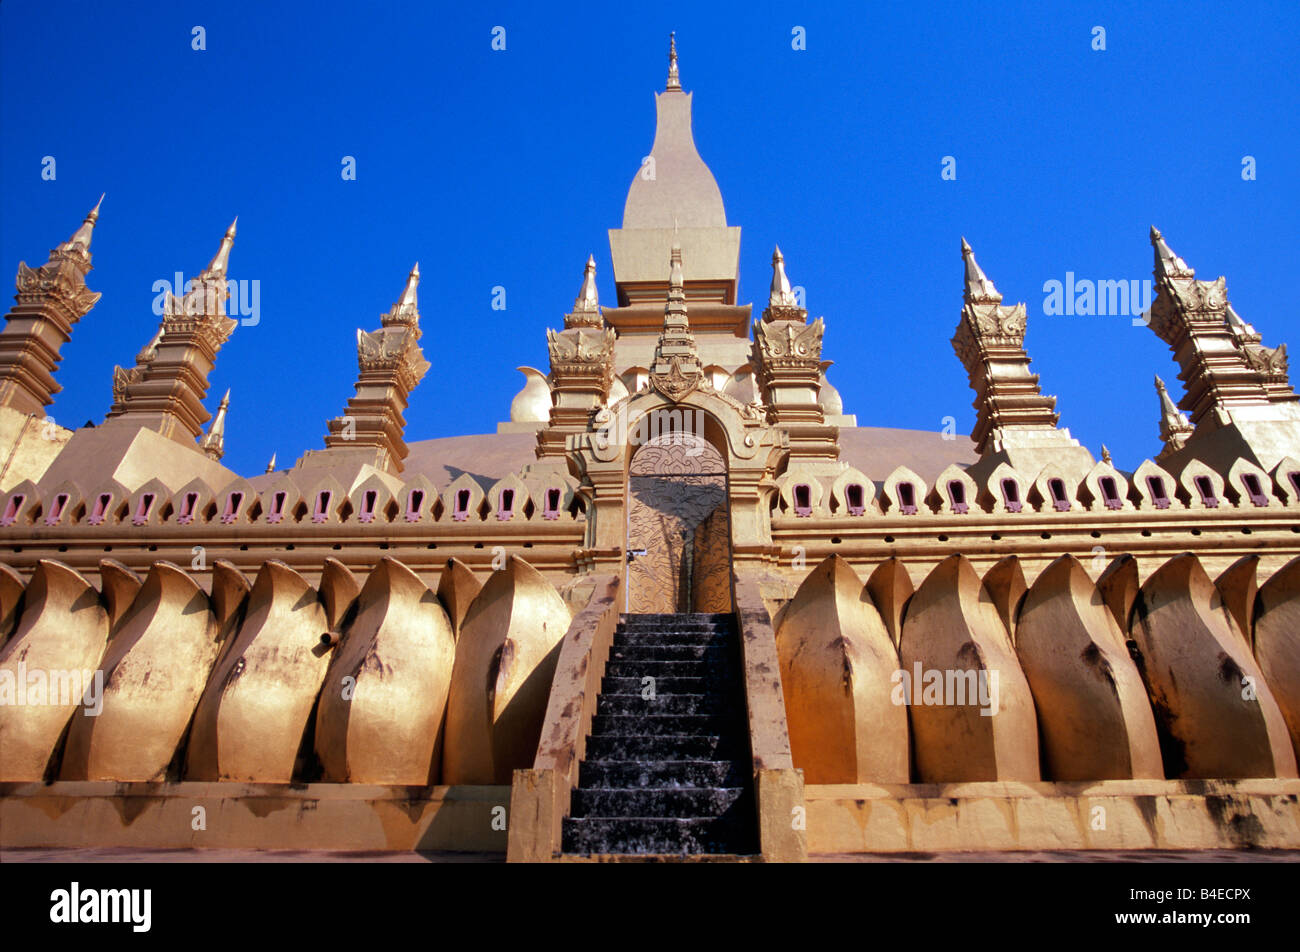 Monument religieux le plus important au Laos, le Pha That Luang temple doré est situé dans la capitale de Vientiane. Banque D'Images